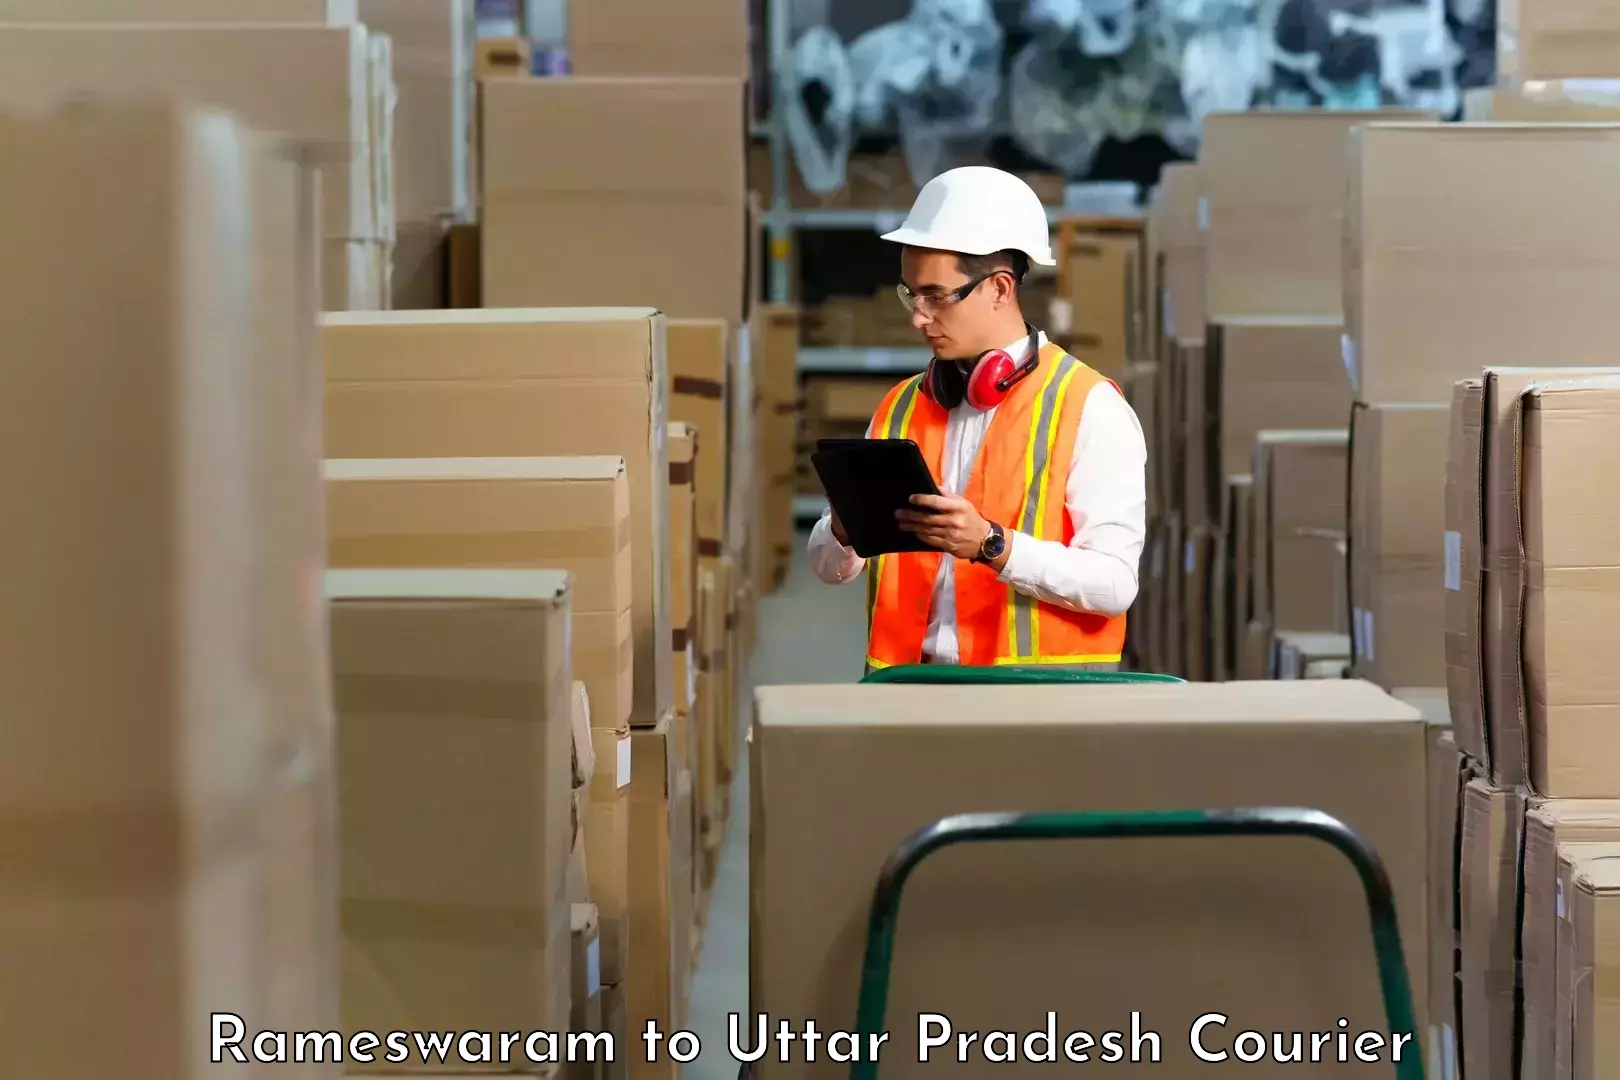 Professional courier handling Rameswaram to Firozabad